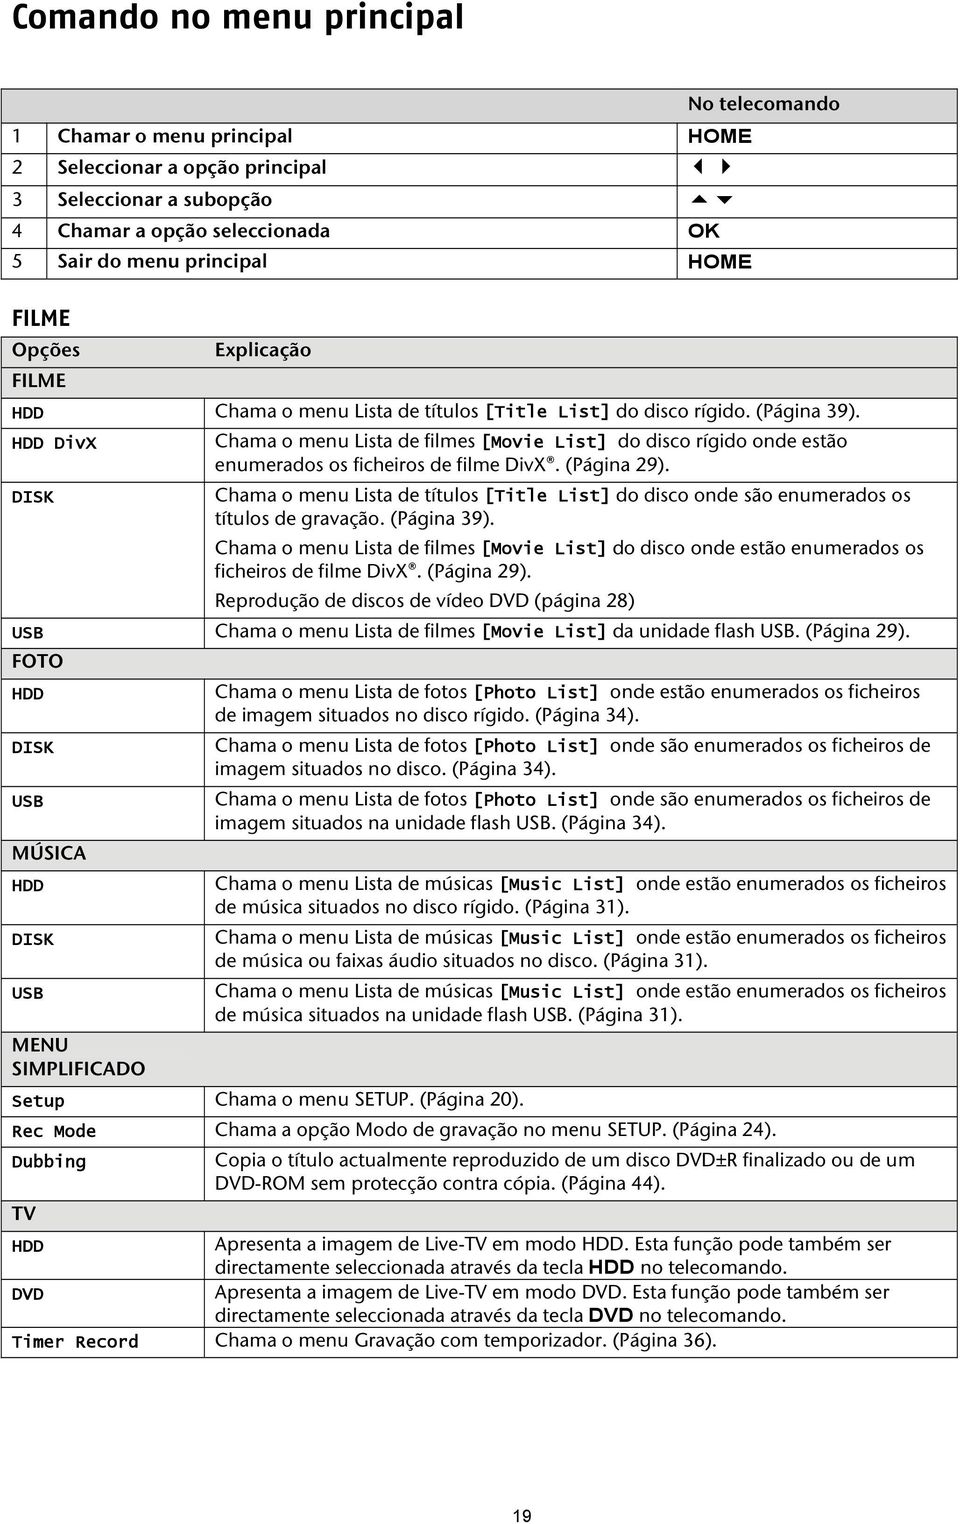 HDD DivX Chama o menu Lista de filmes [Movie List] do disco rígido onde estão enumerados os ficheiros de filme DivX. (Página 29).